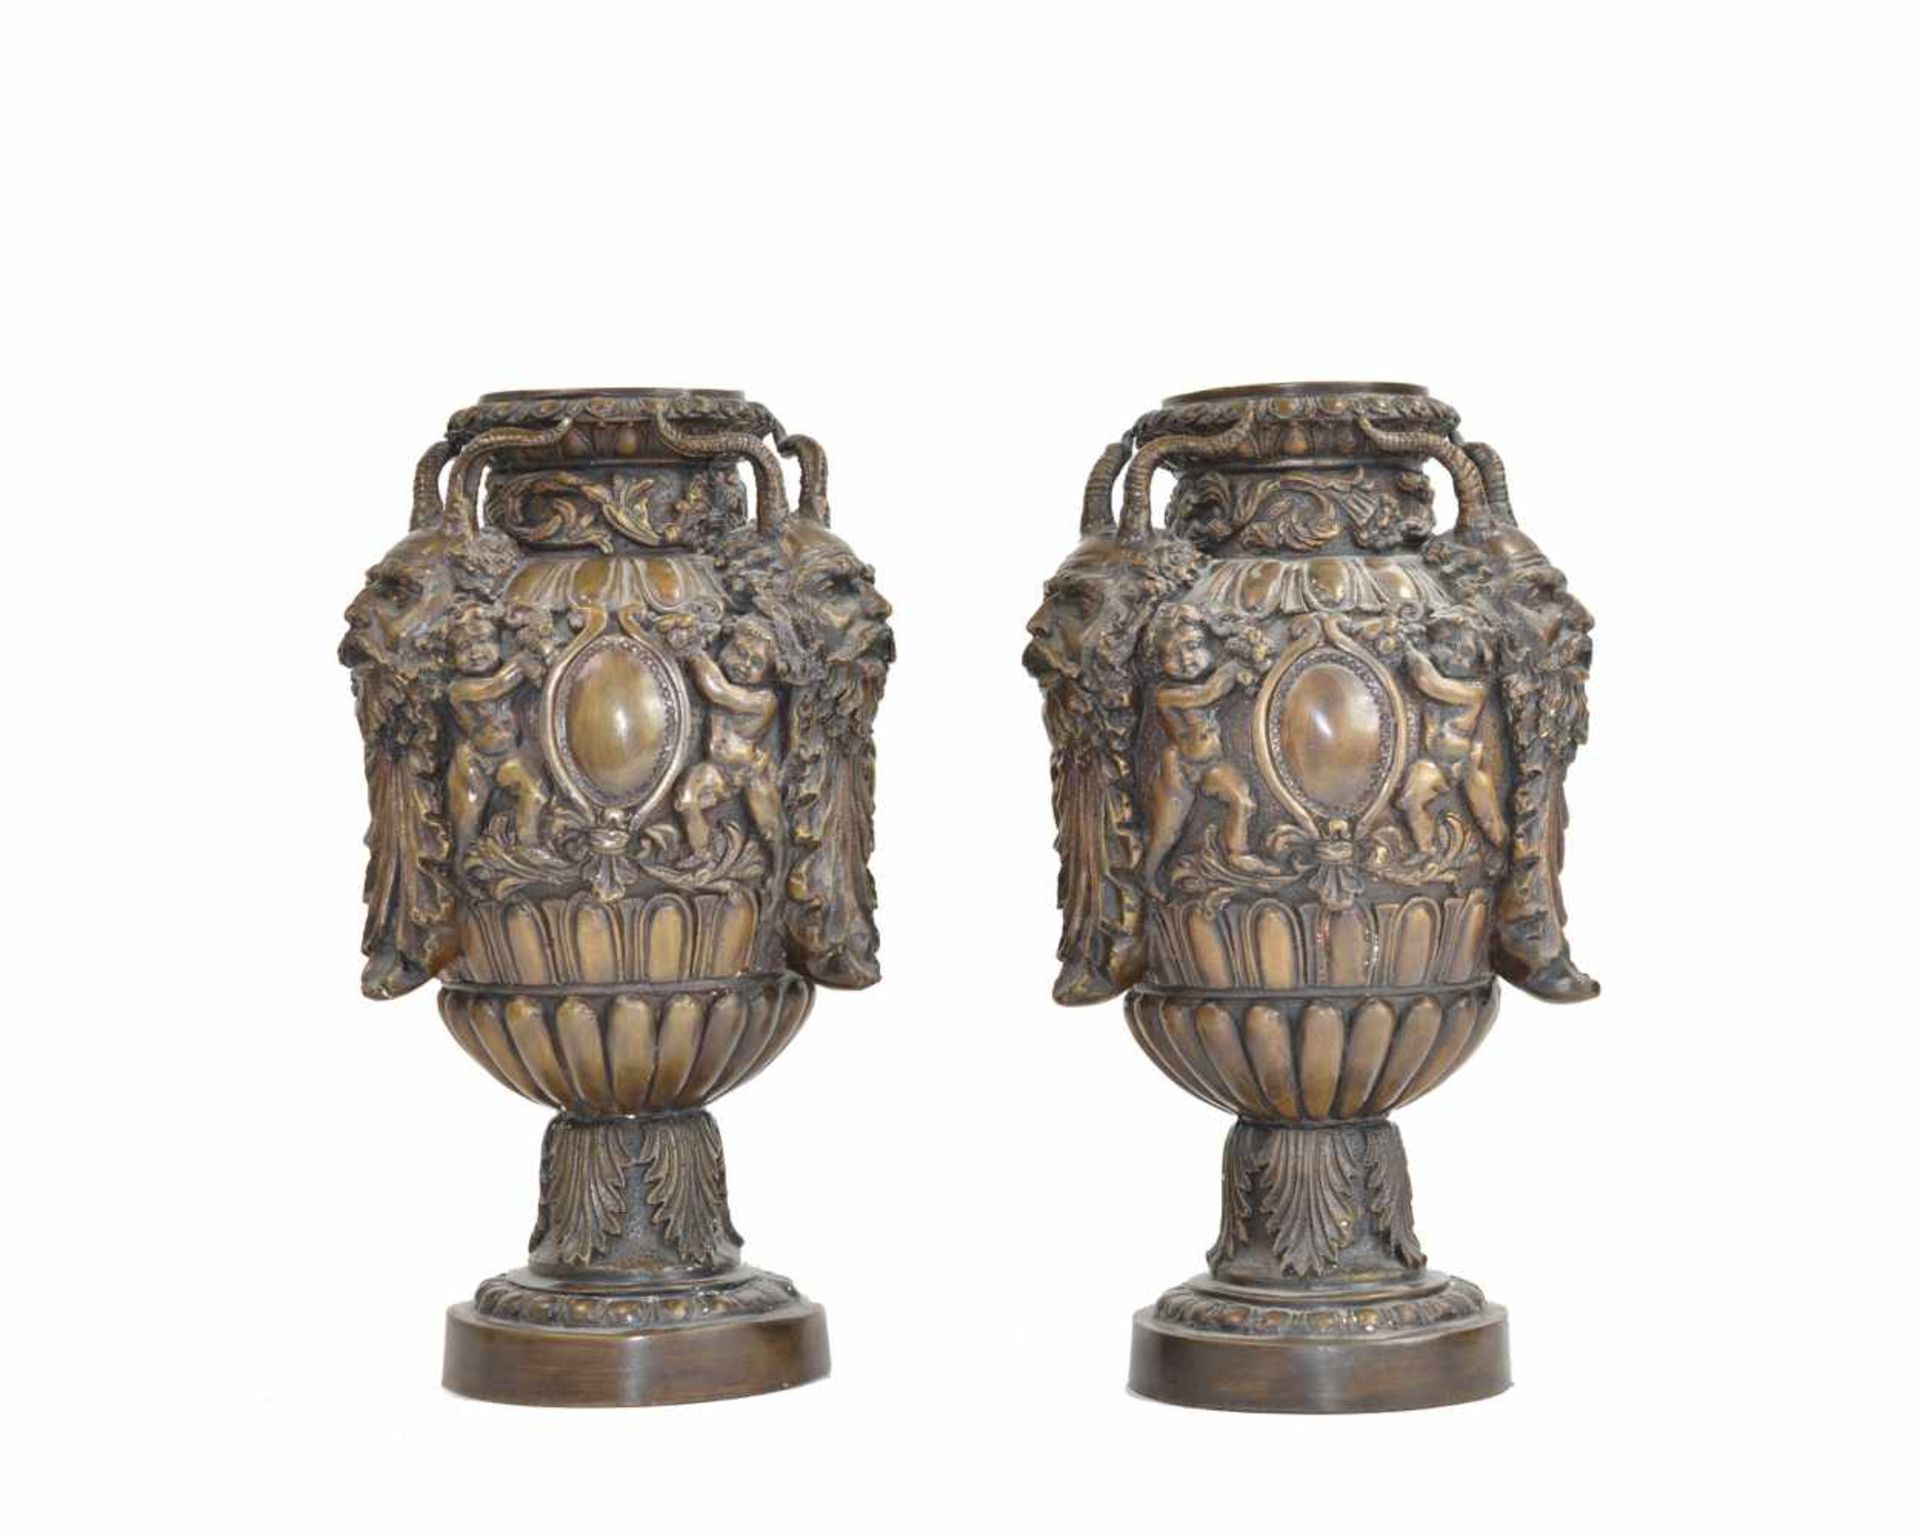 Paar Amphorenvasen20. Jh., Bronze, beide Höhe 30 cm - Image 2 of 2